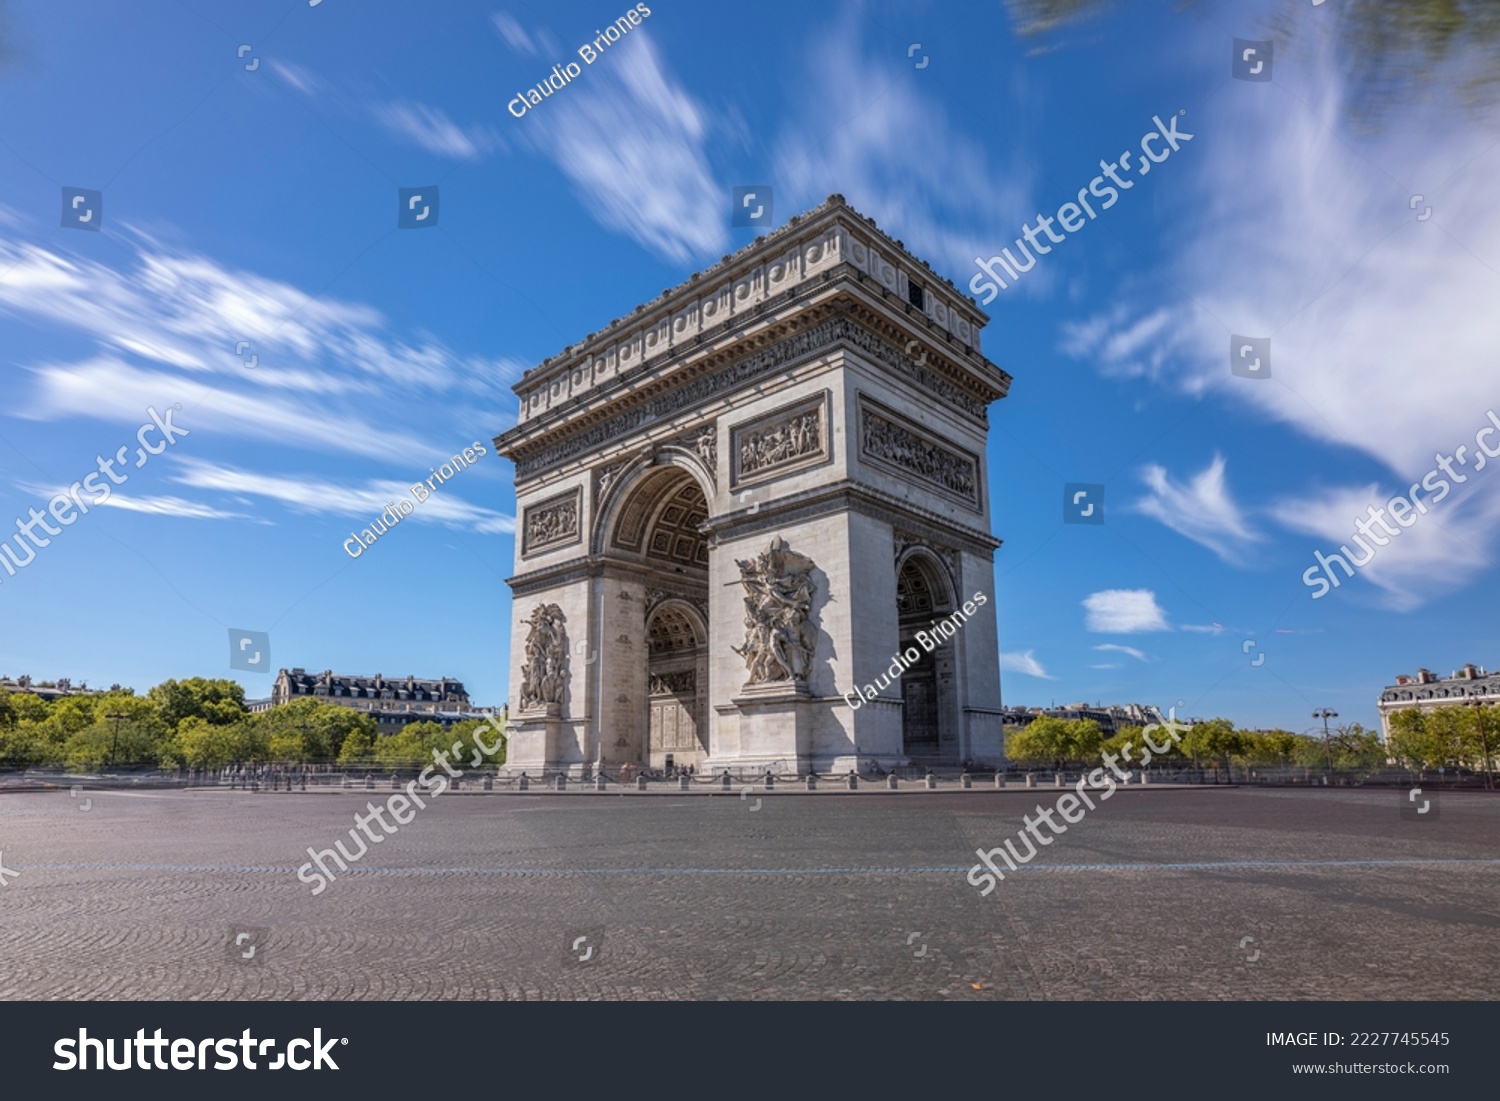 Arch of Triumph - Arc de triomphe - Paris - France - Horizontal #2227745545